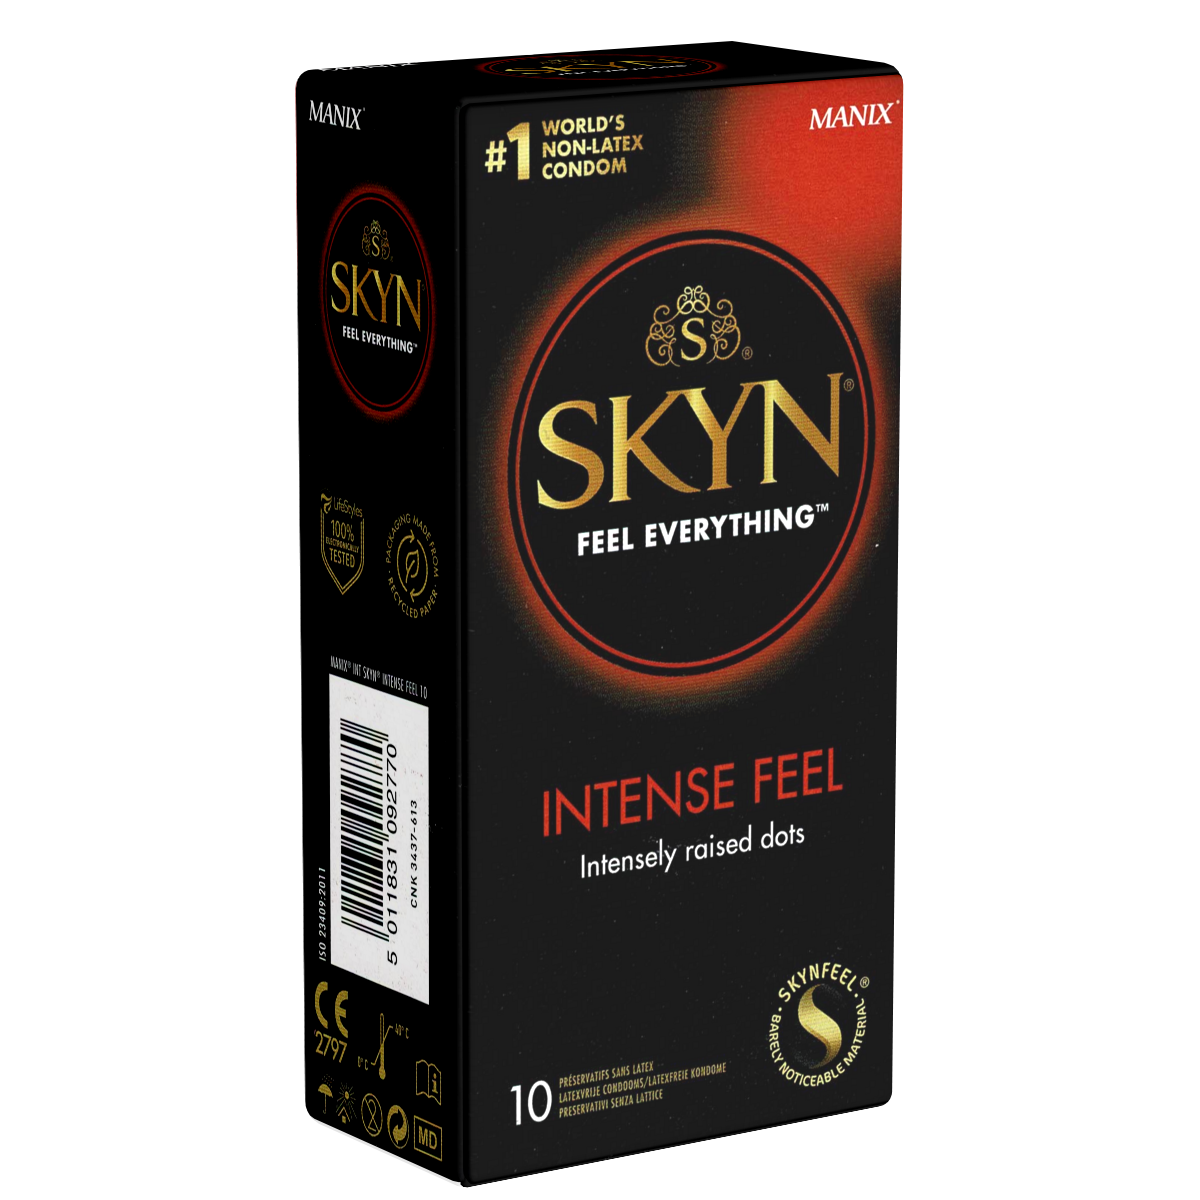 SKYN Intense Feel: Genoppte Sensation, Latexfrei (aus der Kondomotheke® -  Kondome, Gleitgel und mehr online kaufen)